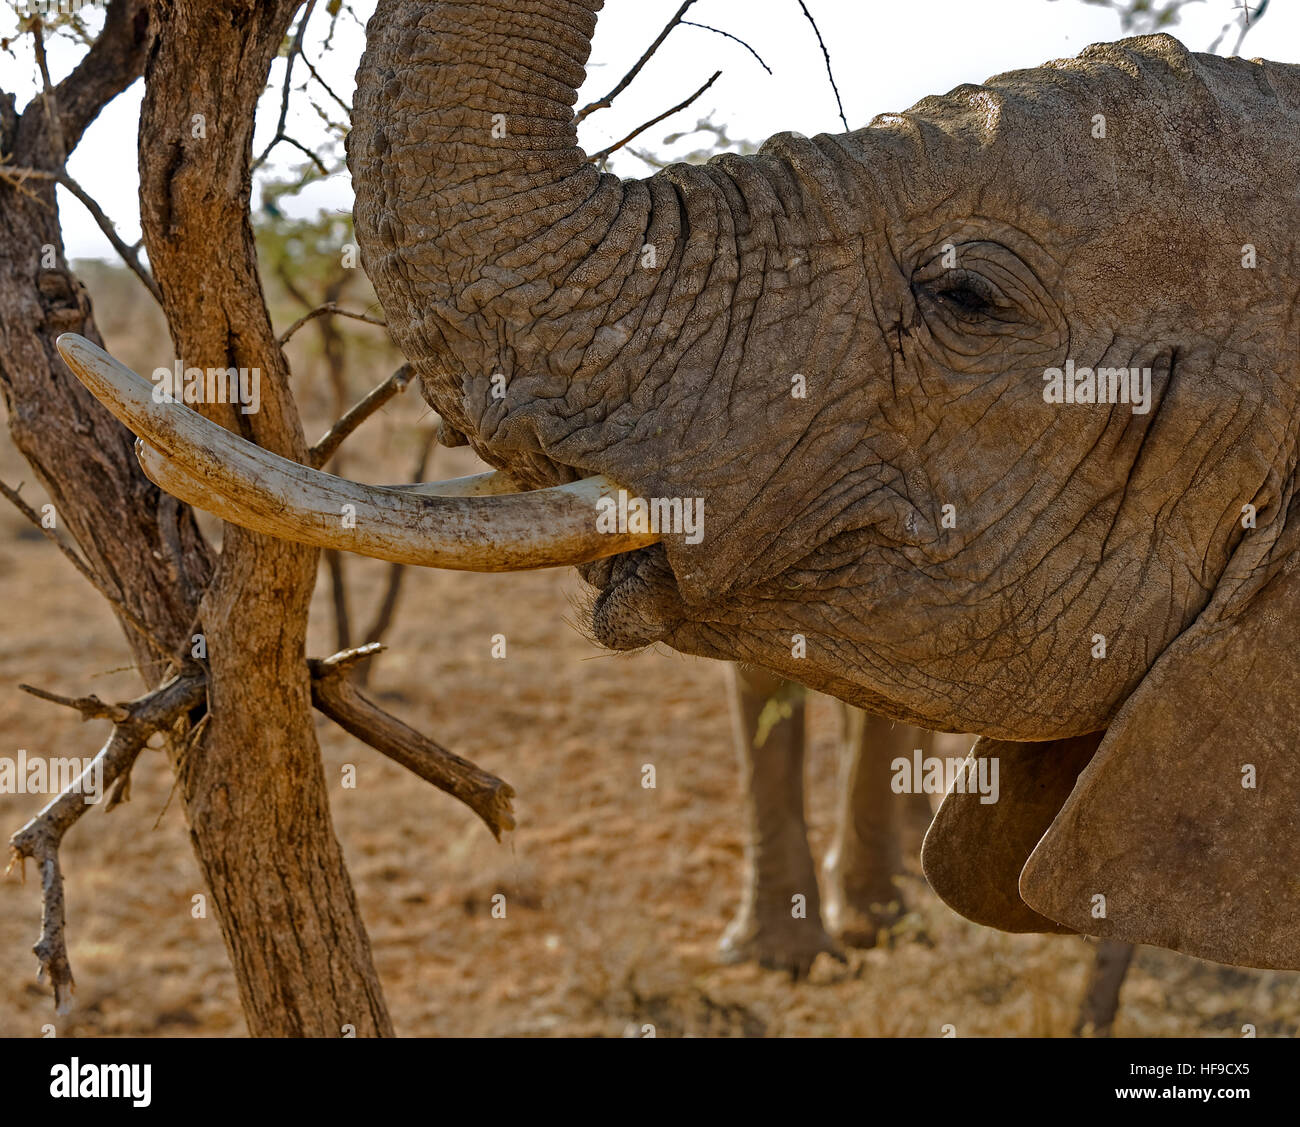 Elephant showing tusks Stock Photo